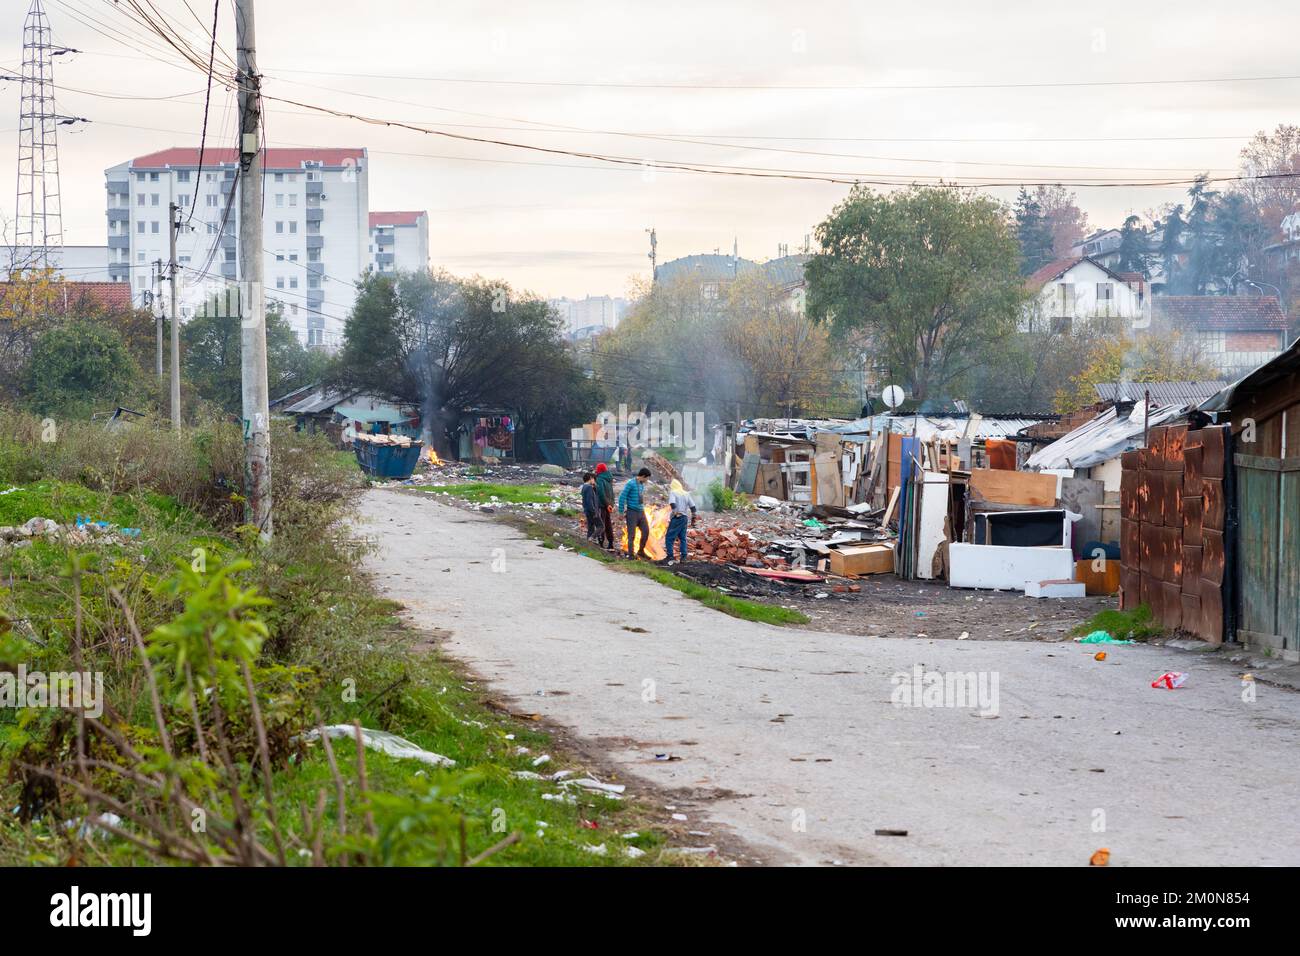 Belgrado, Serbia - 17 de noviembre de 2022: Un grupo de niños gipsy arrasaron el incendio en una zona pobre. La población romaní vive en la pobreza cerca del vertedero lleno de plantas agrícolas Foto de stock